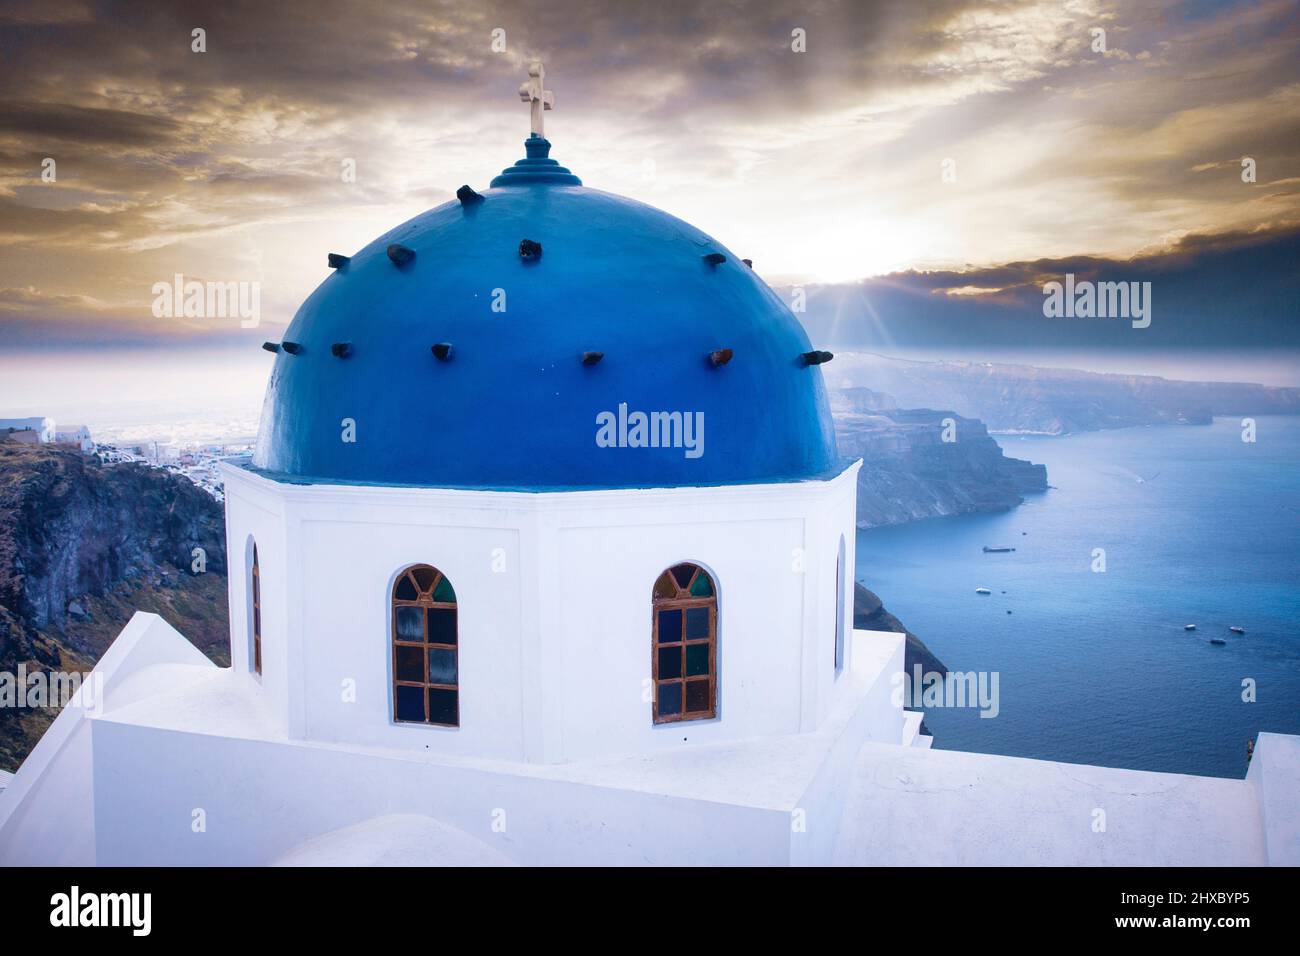 A church dome in Imerovigli overlooks the Aegean Sea from the caldera cliffs of Santorini, Greece. Stock Photo